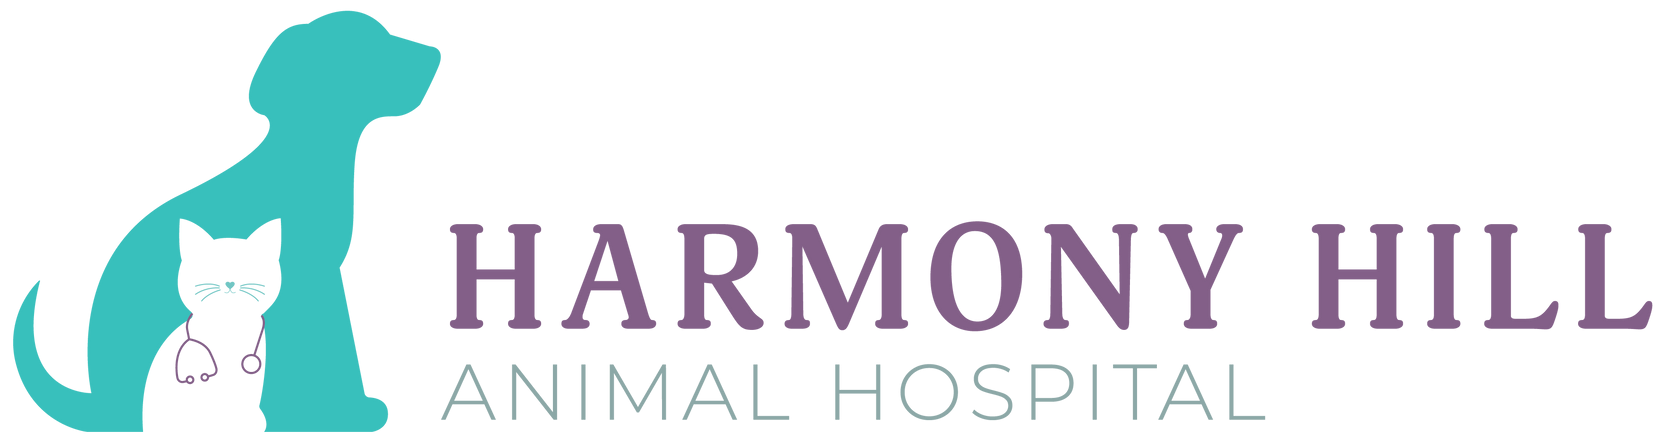 Harmony Hill Animal Hospital logo